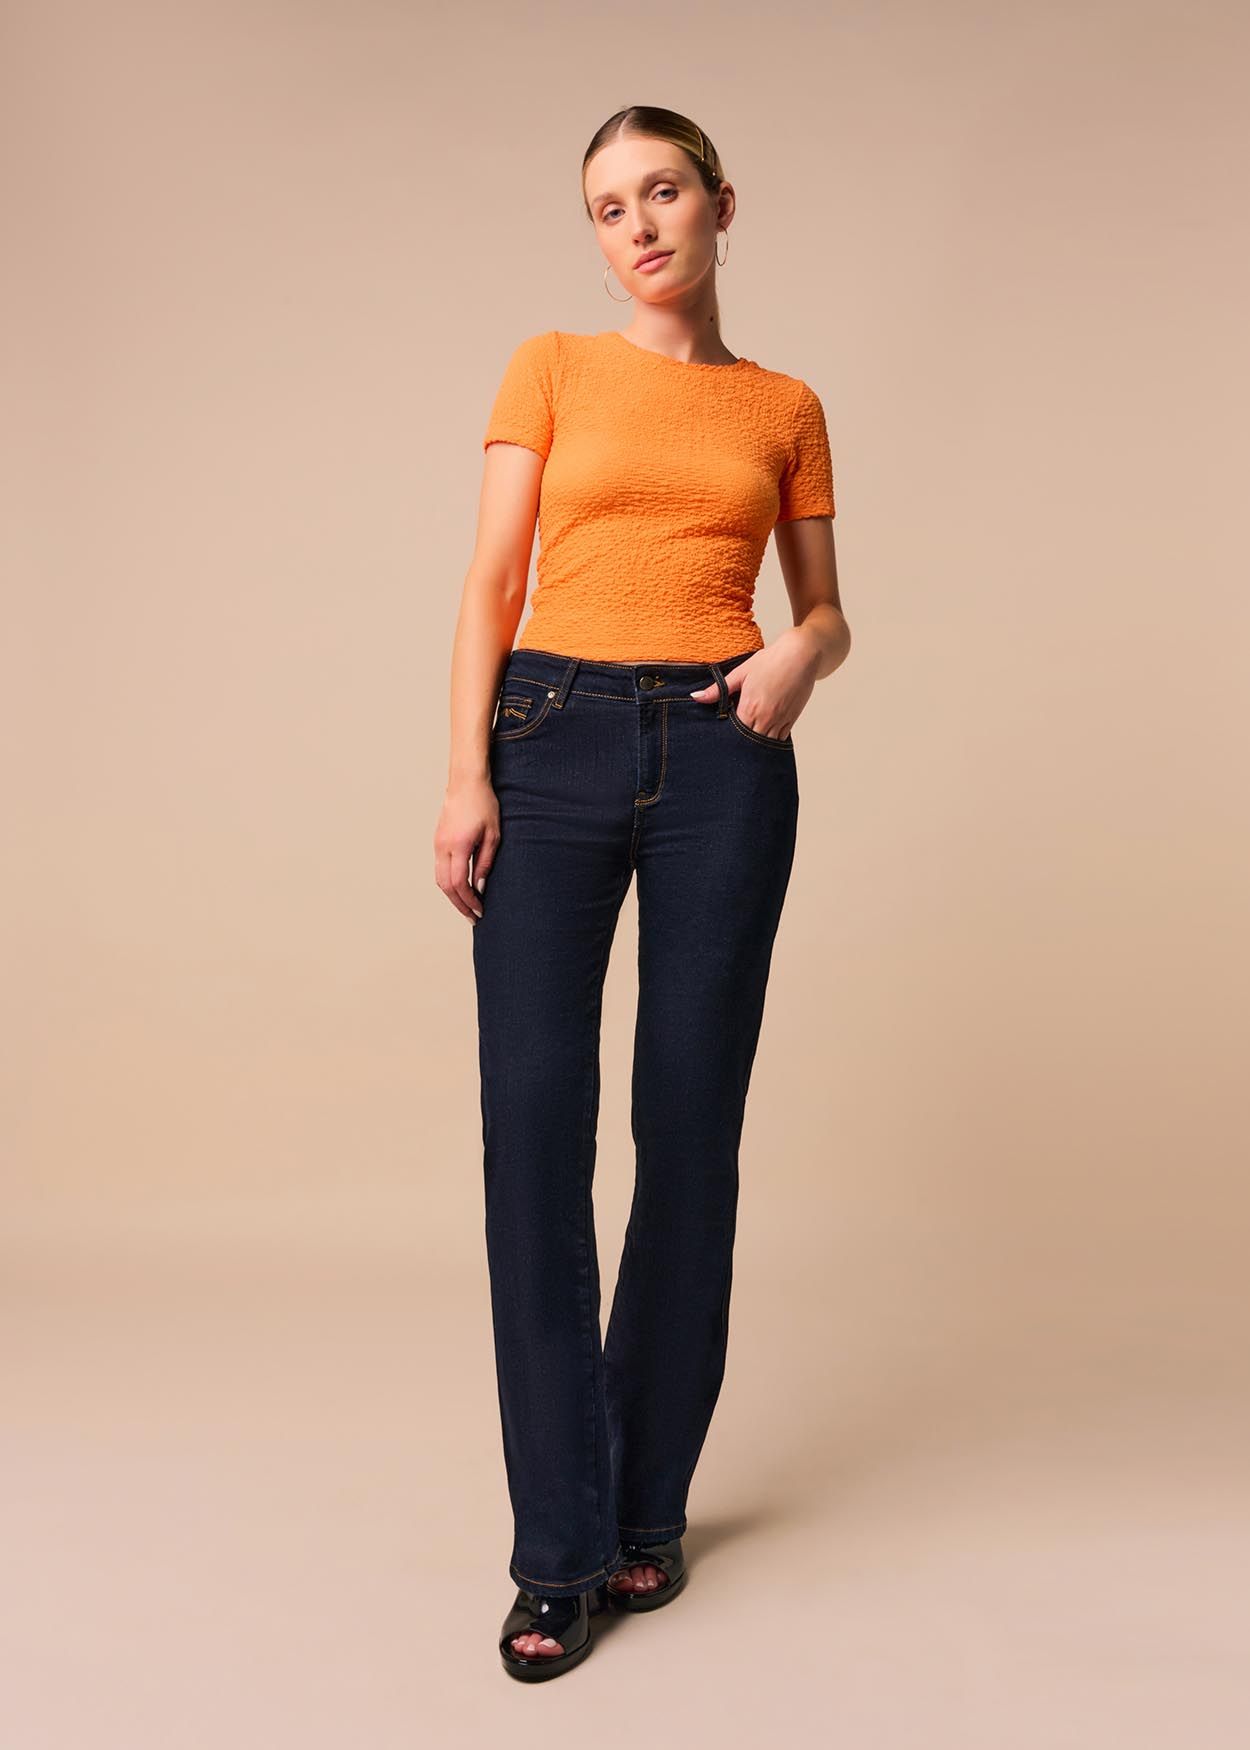 CLAUDIA KYRA - Jeans Taille Basse | Coupe Droite  | Taille en pouces Cimarron